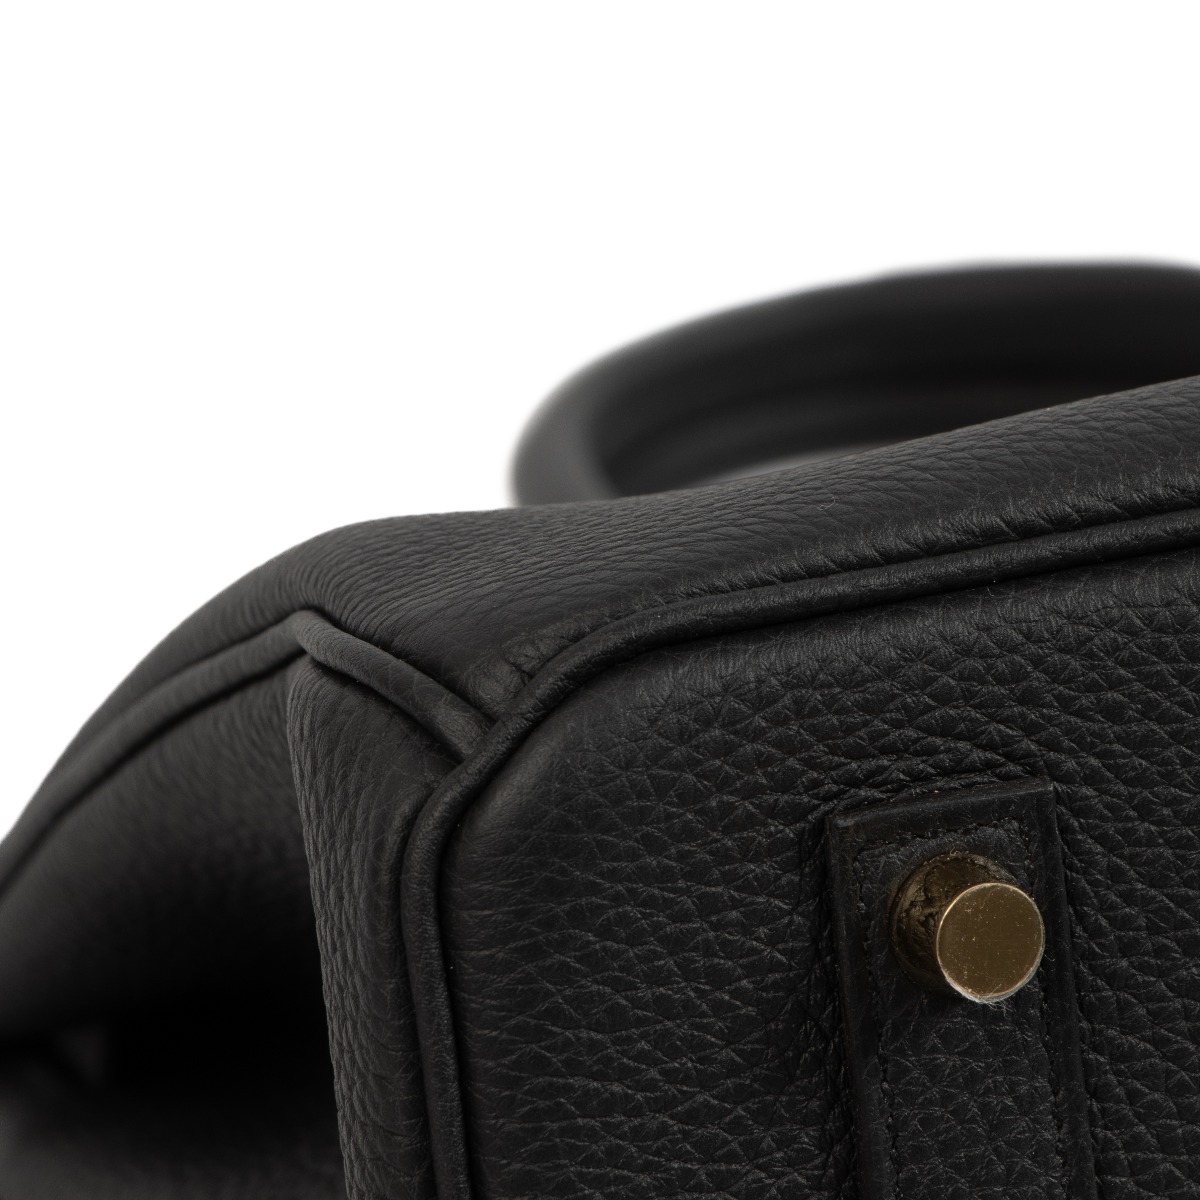 Hermès Black Togo Birkin 35 with Gold Hardware W/Tags 2022